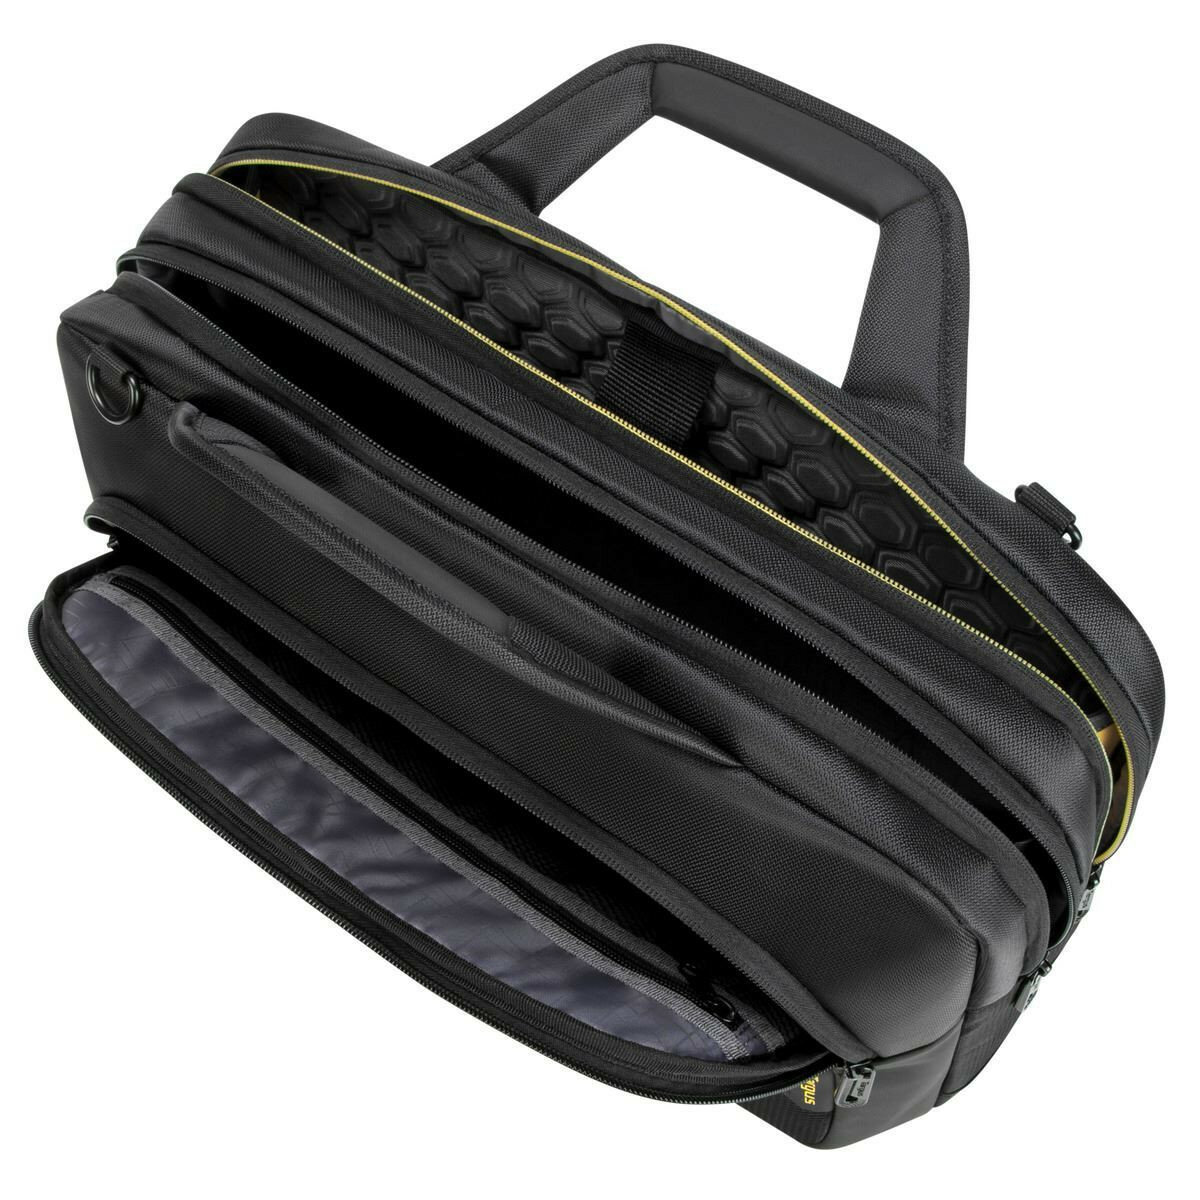 Torba na laptopa Targus CityGear 15.6'' czarna widok na torbę od góry z otworzonymi kieszeniami